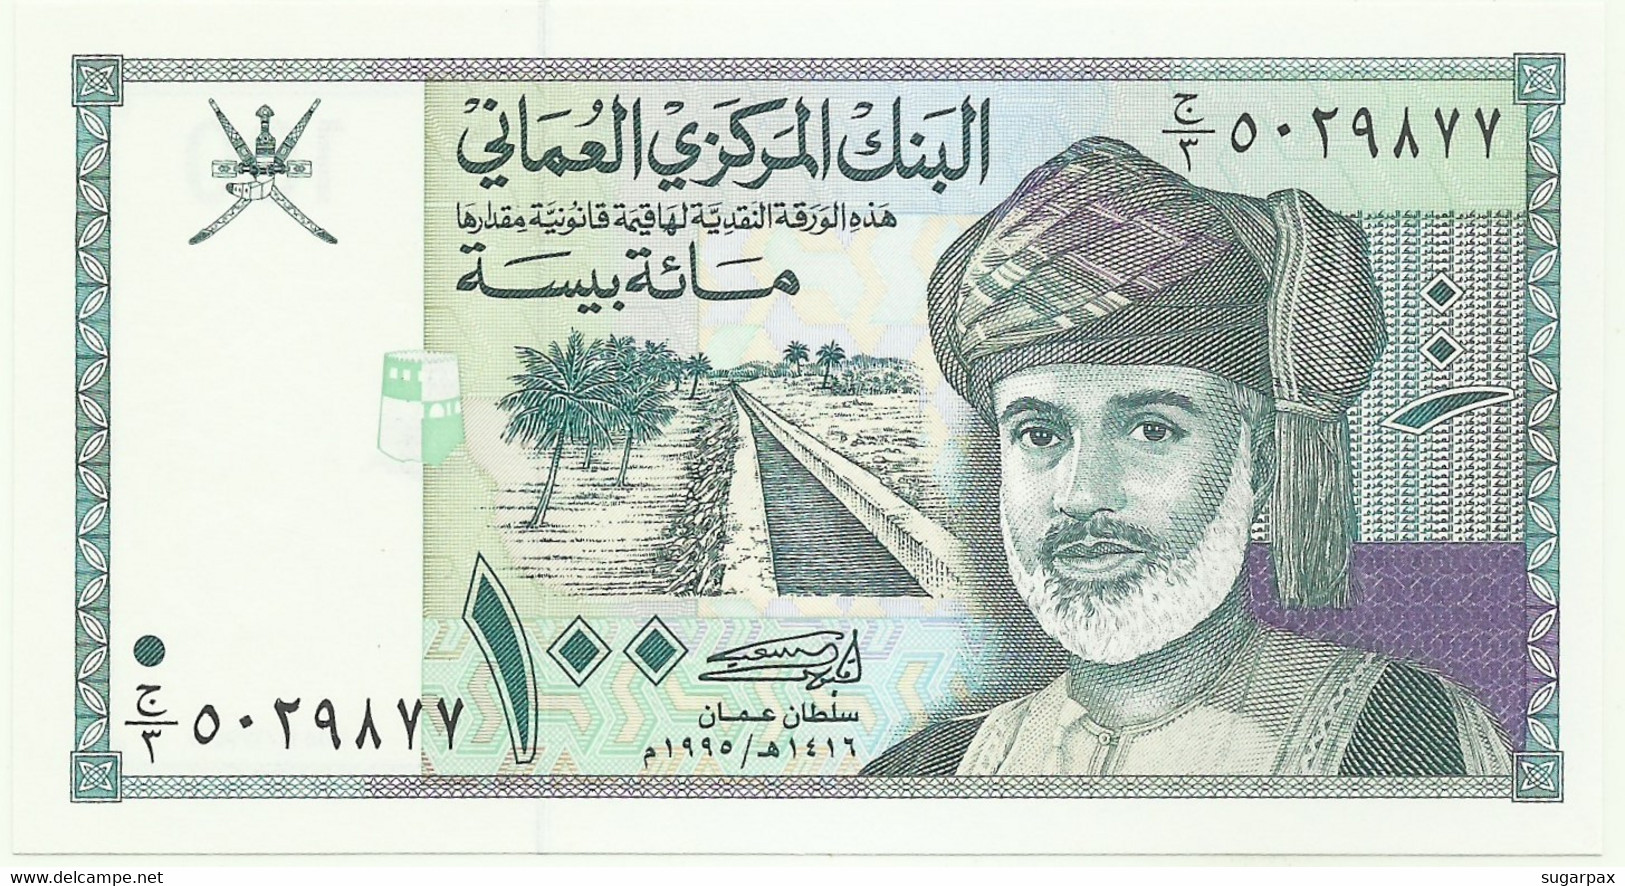 Oman - 100 Baisa - 1995 / AH1416 - Pick 31 - Unc. - Central Bank Of Oman - Oman